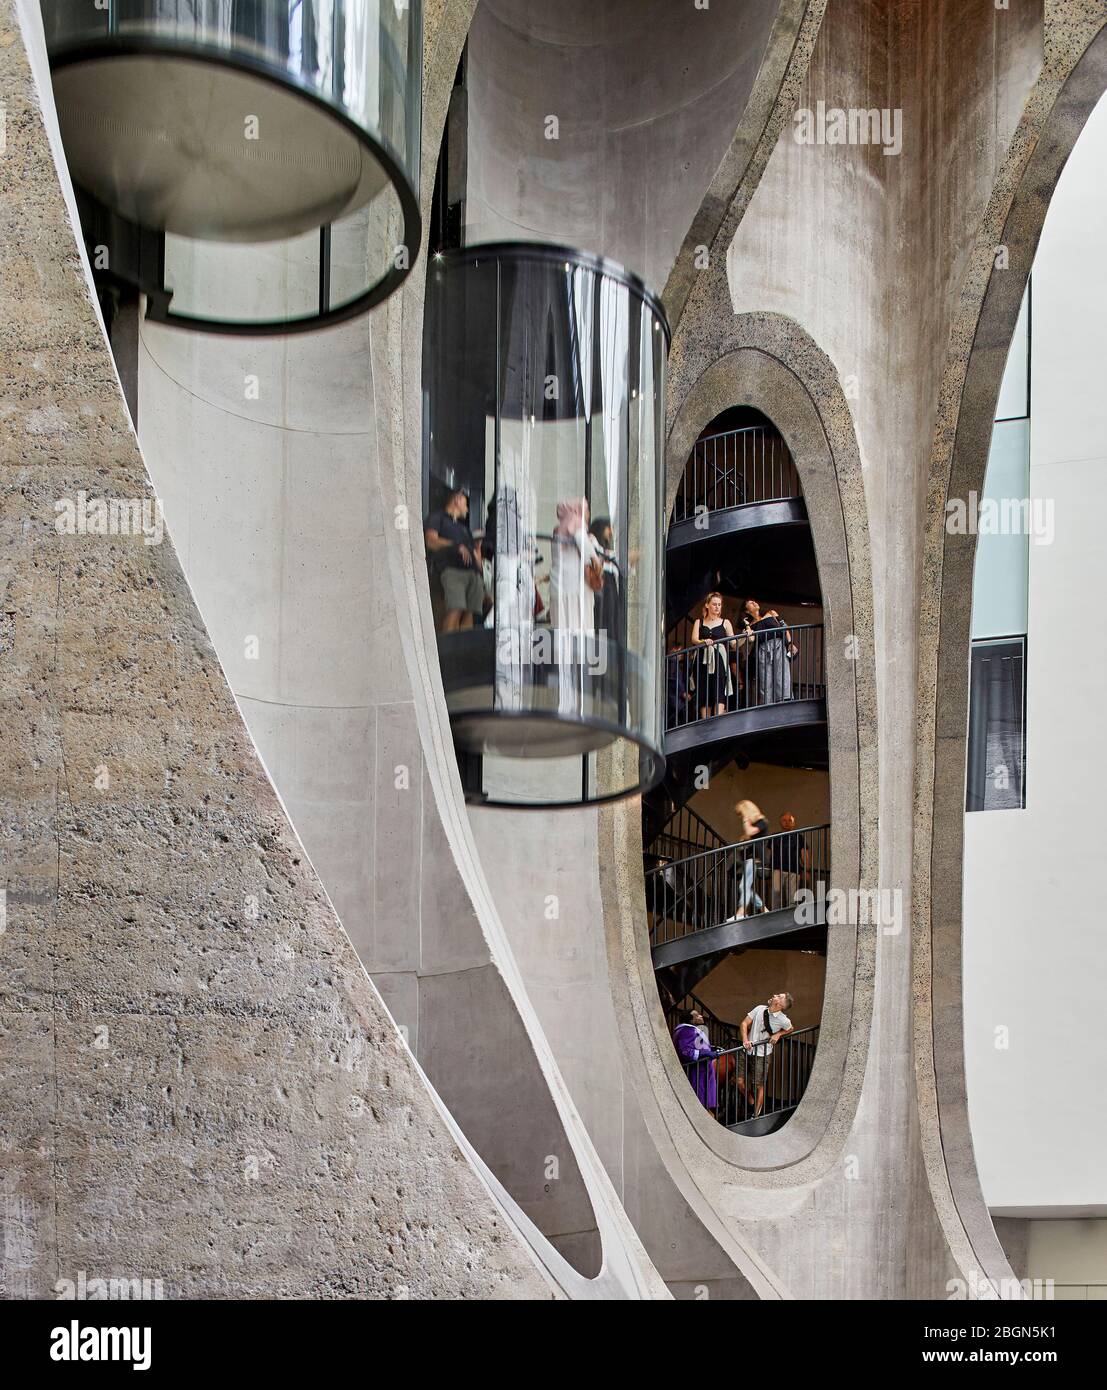 Atrium central avec ascenseurs et escalier et tubes en béton exposant la structure. Zeitz MOCAA, le Cap, Afrique du Sud. Architecte: Heatherwick Studio Banque D'Images